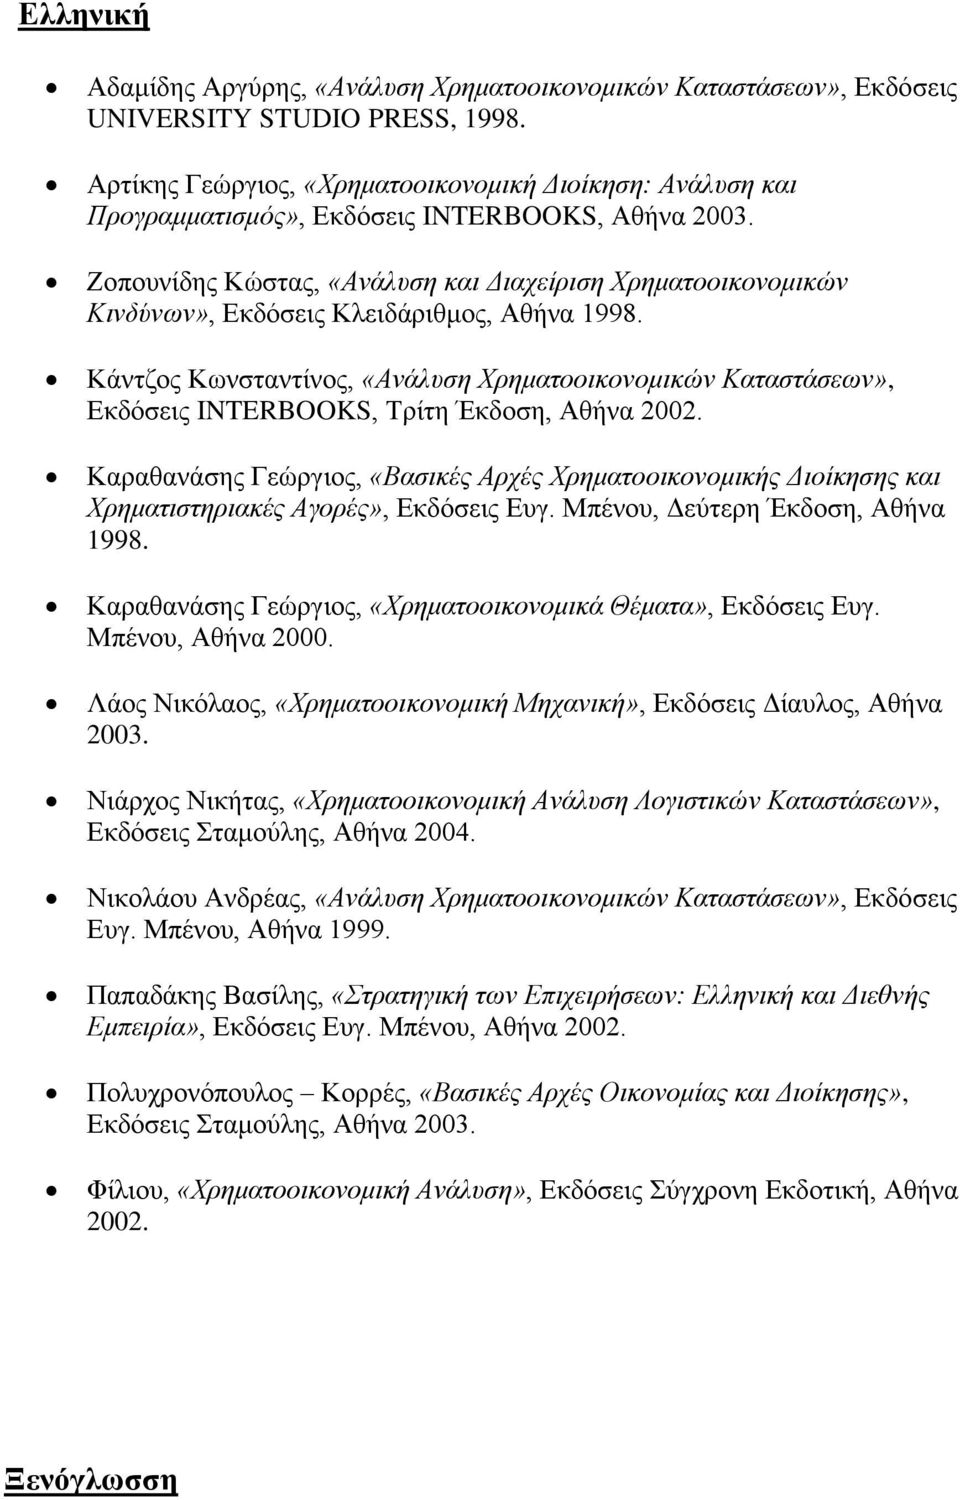 Ζοπουνίδης Κώστας, «Ανάλυση και Διαχείριση Χρηματοοικονομικών Κινδύνων», Εκδόσεις Κλειδάριθμος, Αθήνα 1998.